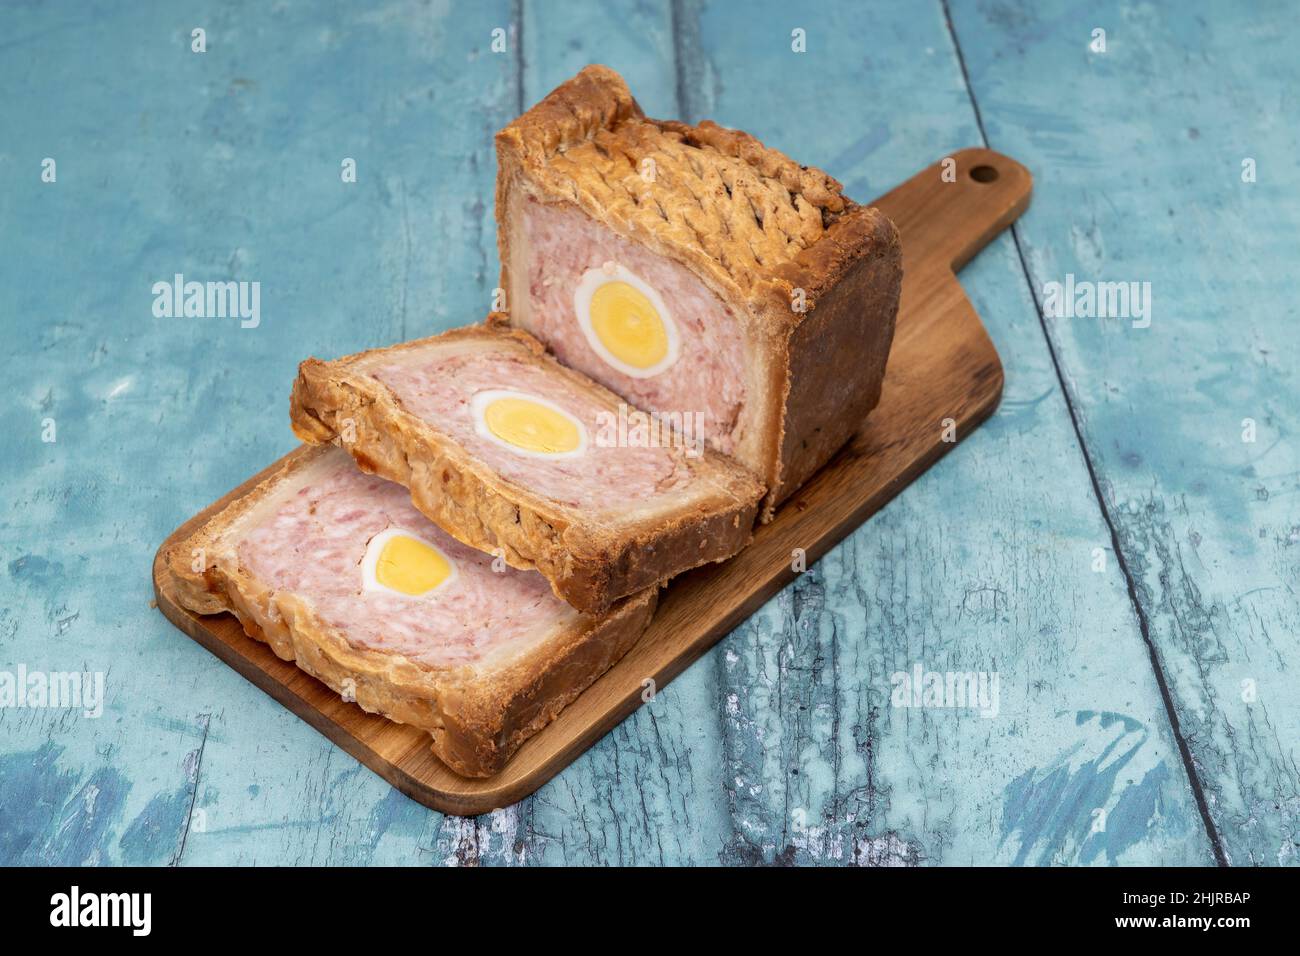 Una tarta de jamón y huevo de Gala en rodajas Foto de stock